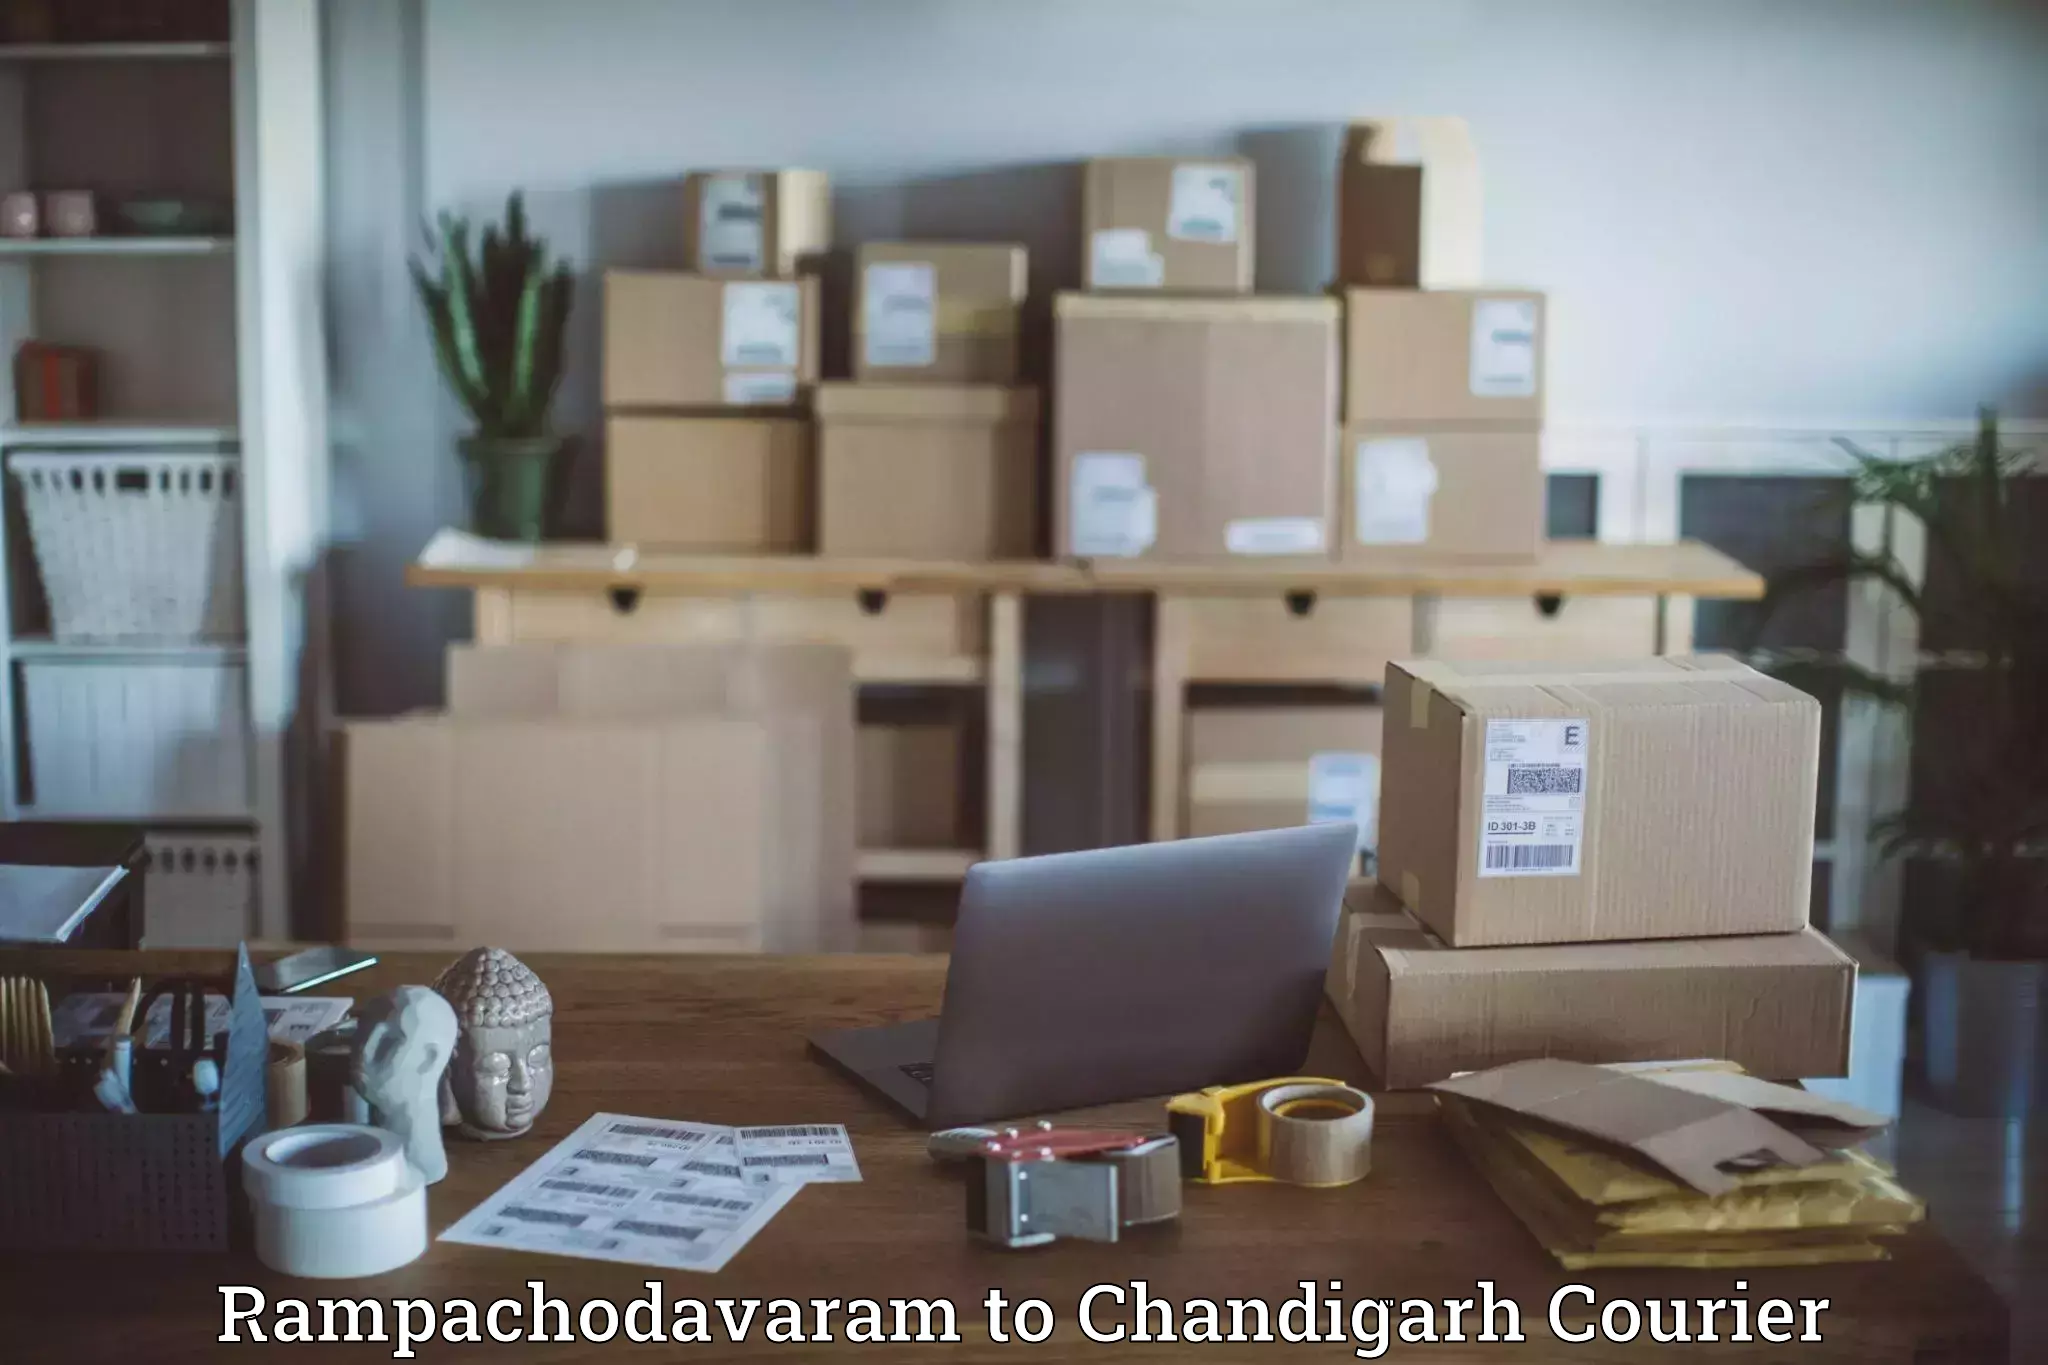 High-capacity parcel service Rampachodavaram to Chandigarh